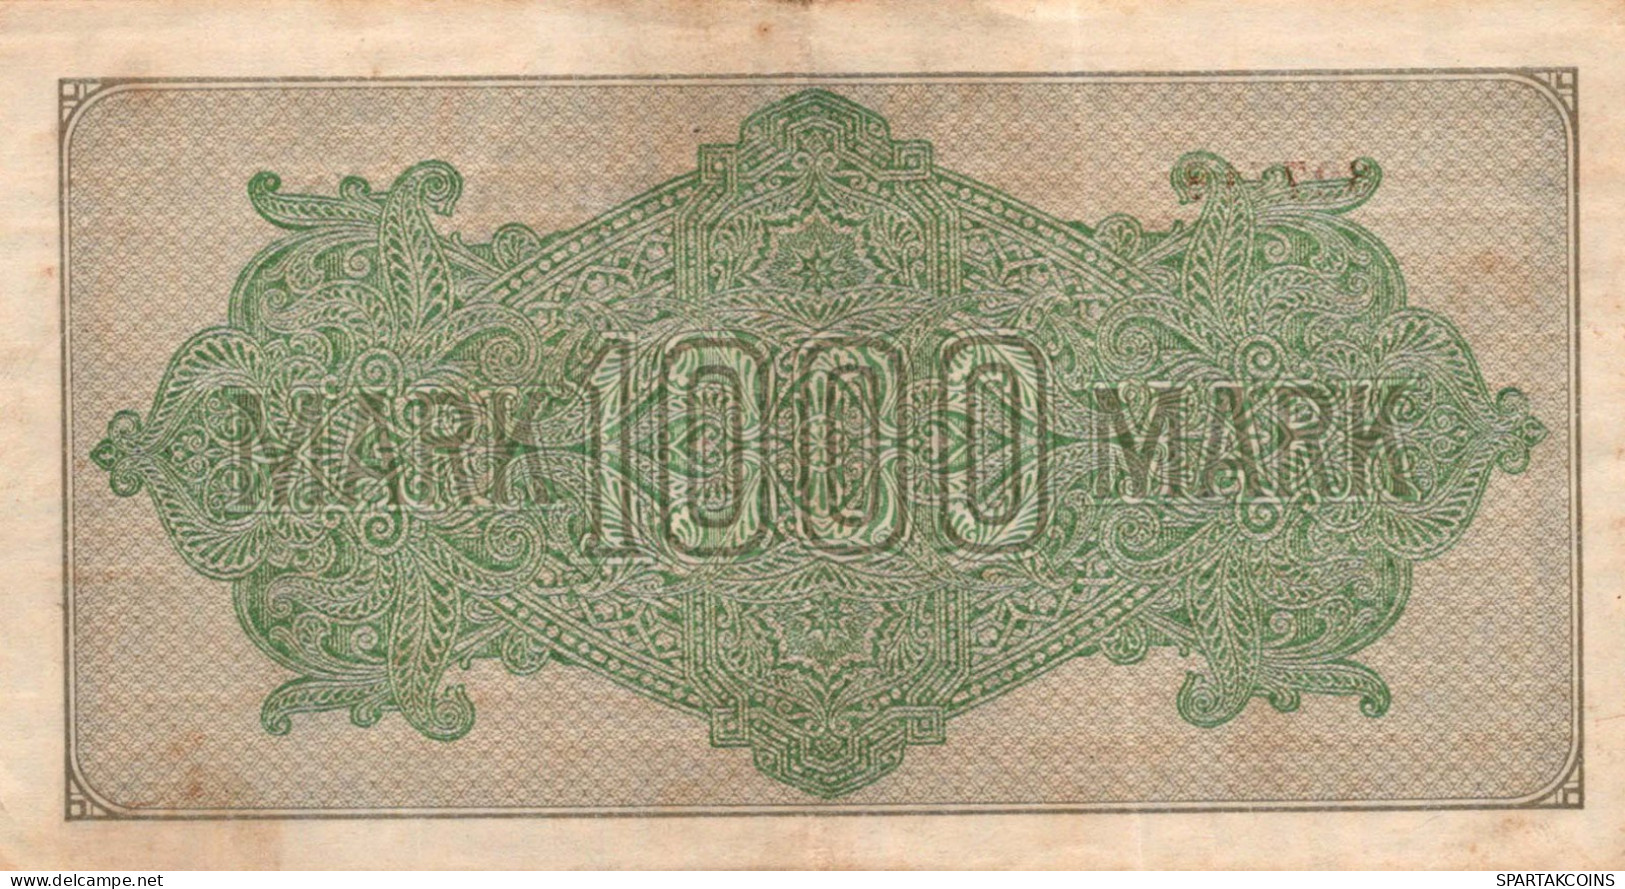 1000 MARK 1922 Stadt BERLIN DEUTSCHLAND Papiergeld Banknote #PL385 - [11] Local Banknote Issues